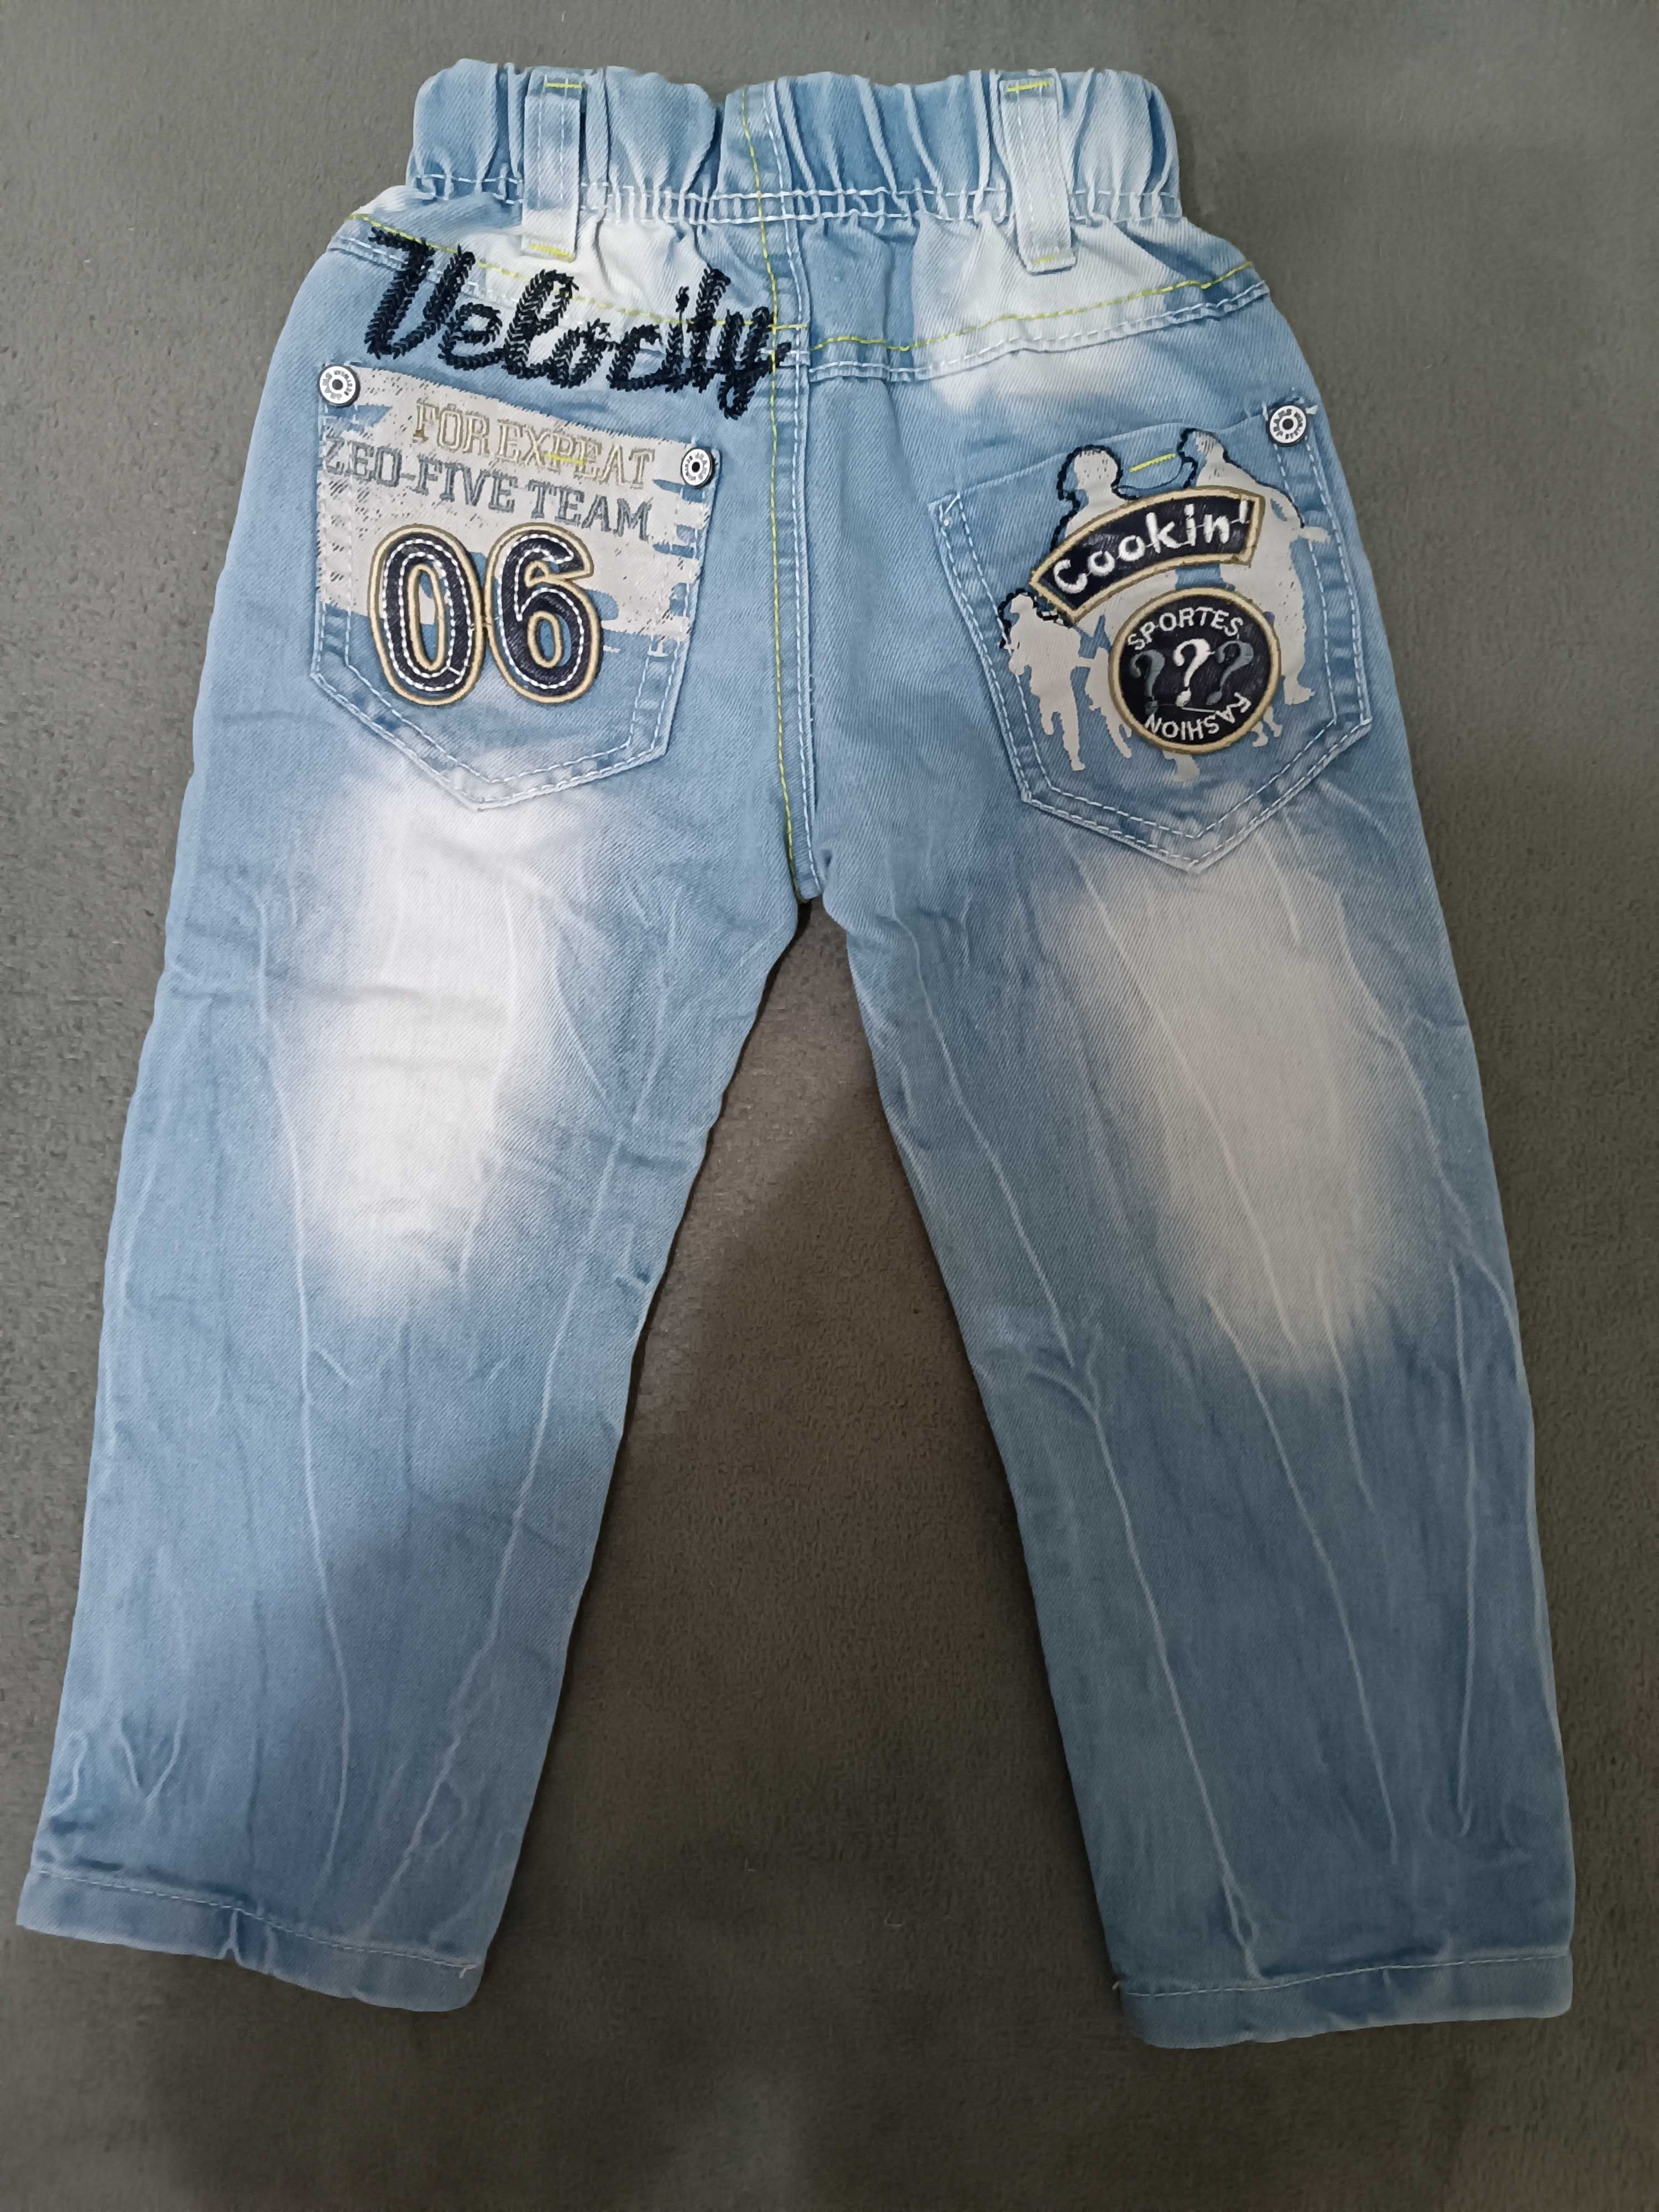 Spodnie jeansy chłopięce 104, ekspresowa wysyłka